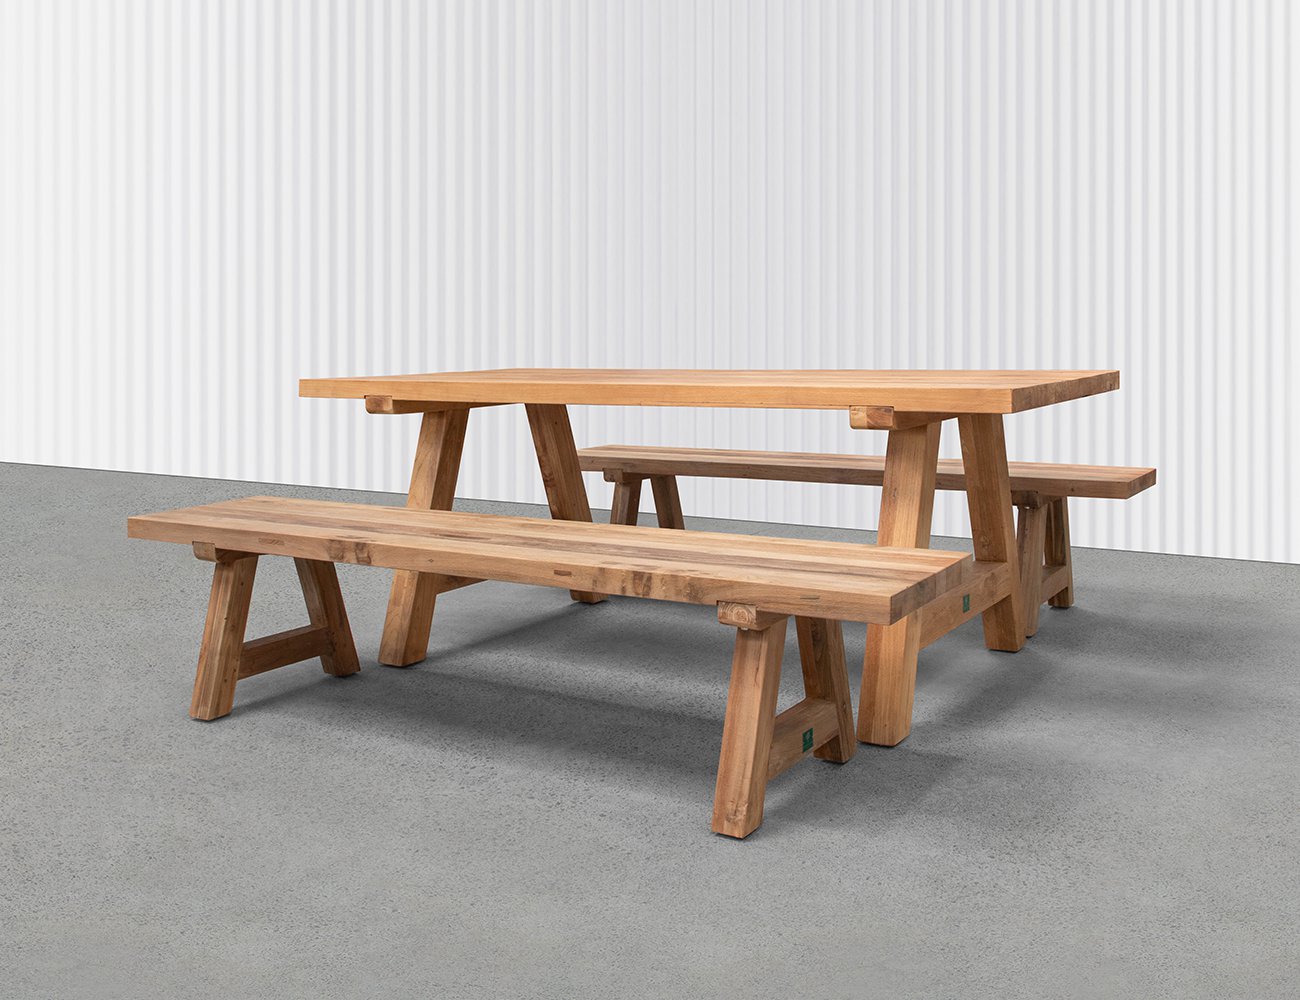 Teak A Frame Dining Table & Bench Bundle - 200cm